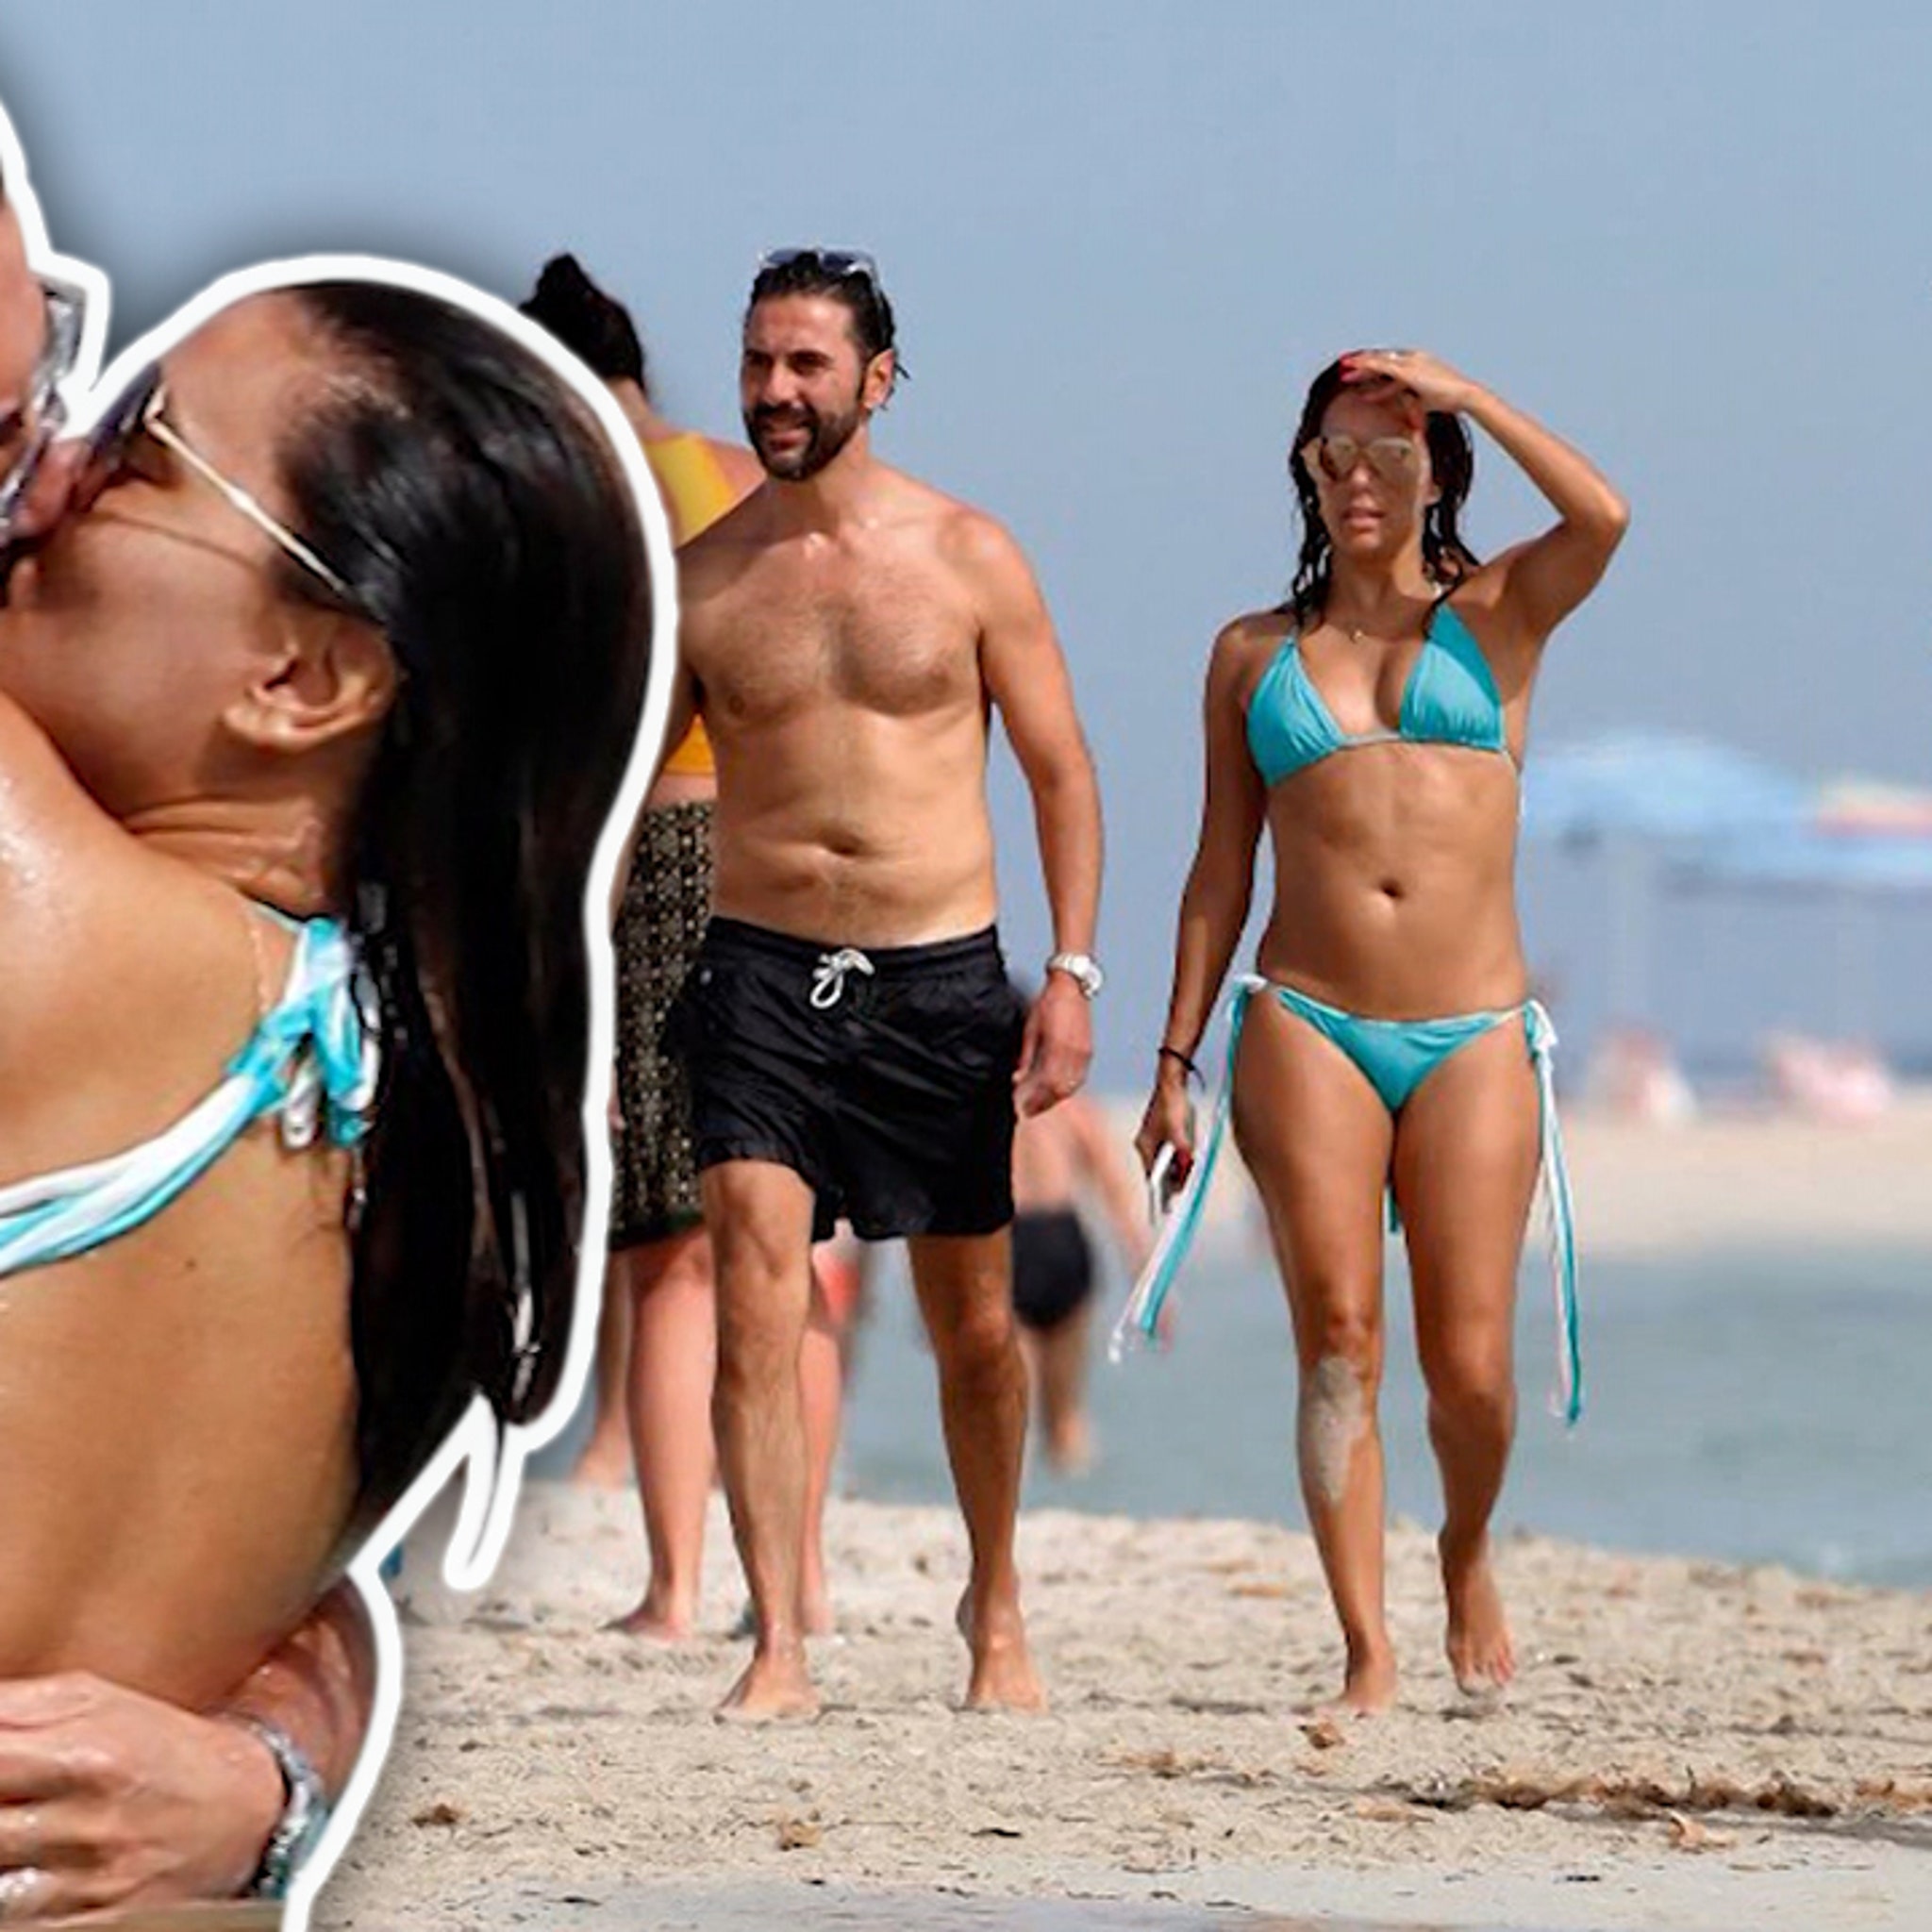 Nude Beach Fun Videos - Eva Longoria On A Nude Beach?!